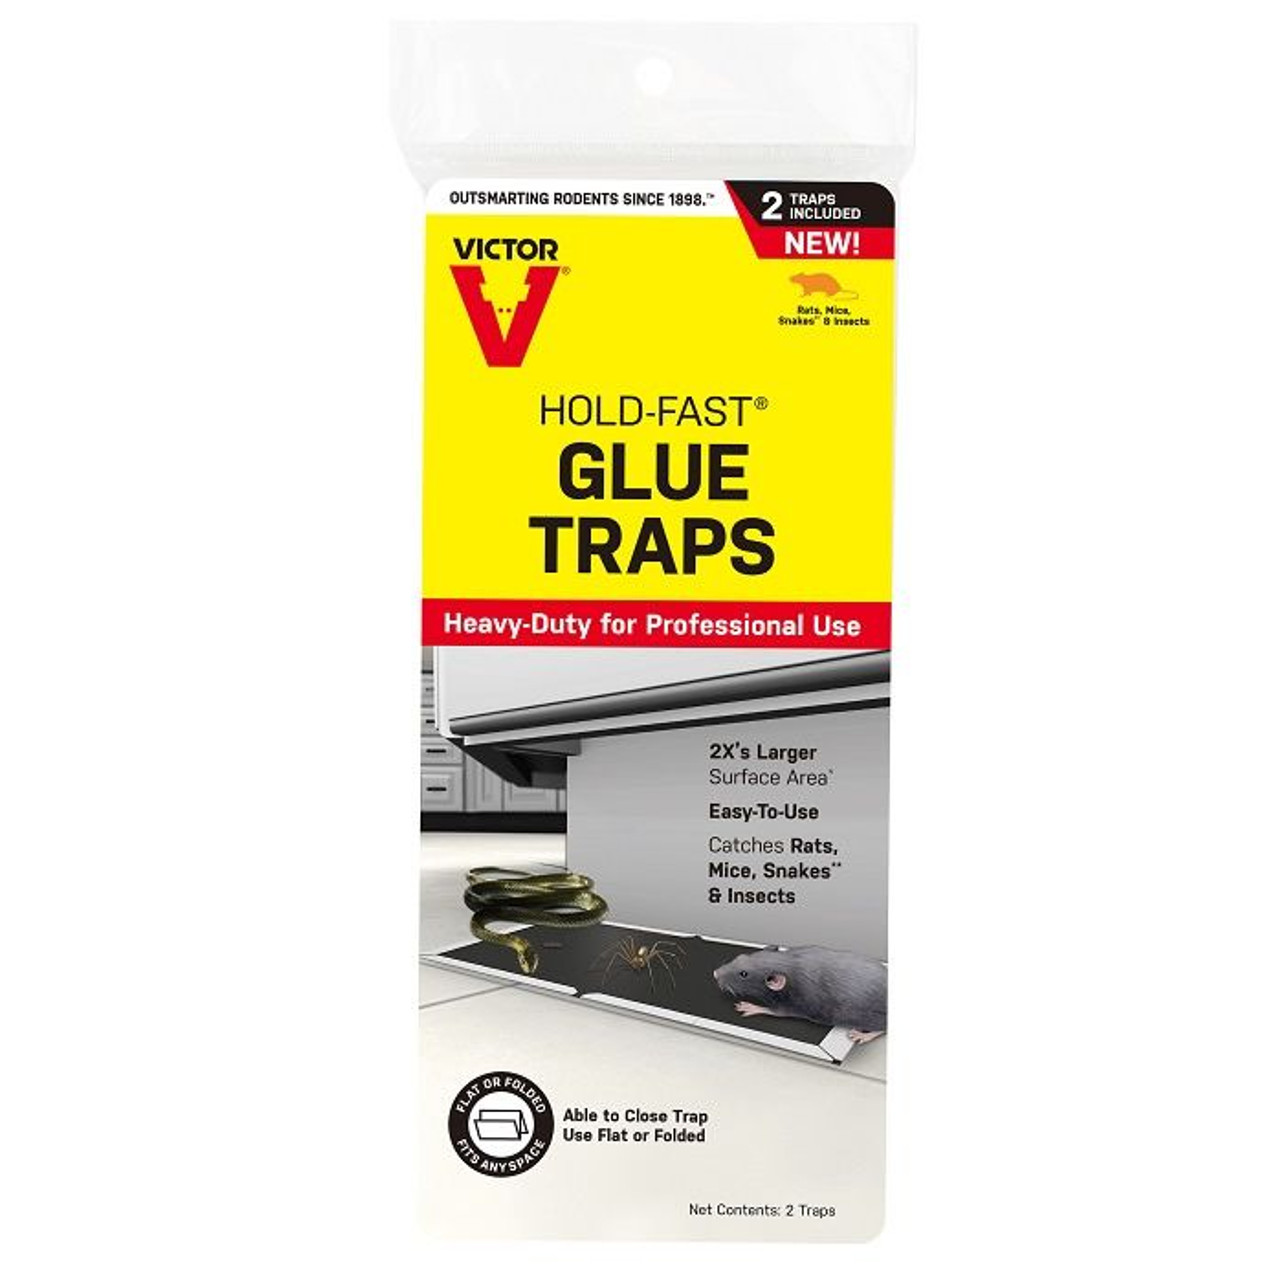 Harris Glue Rat & Mouse Trap